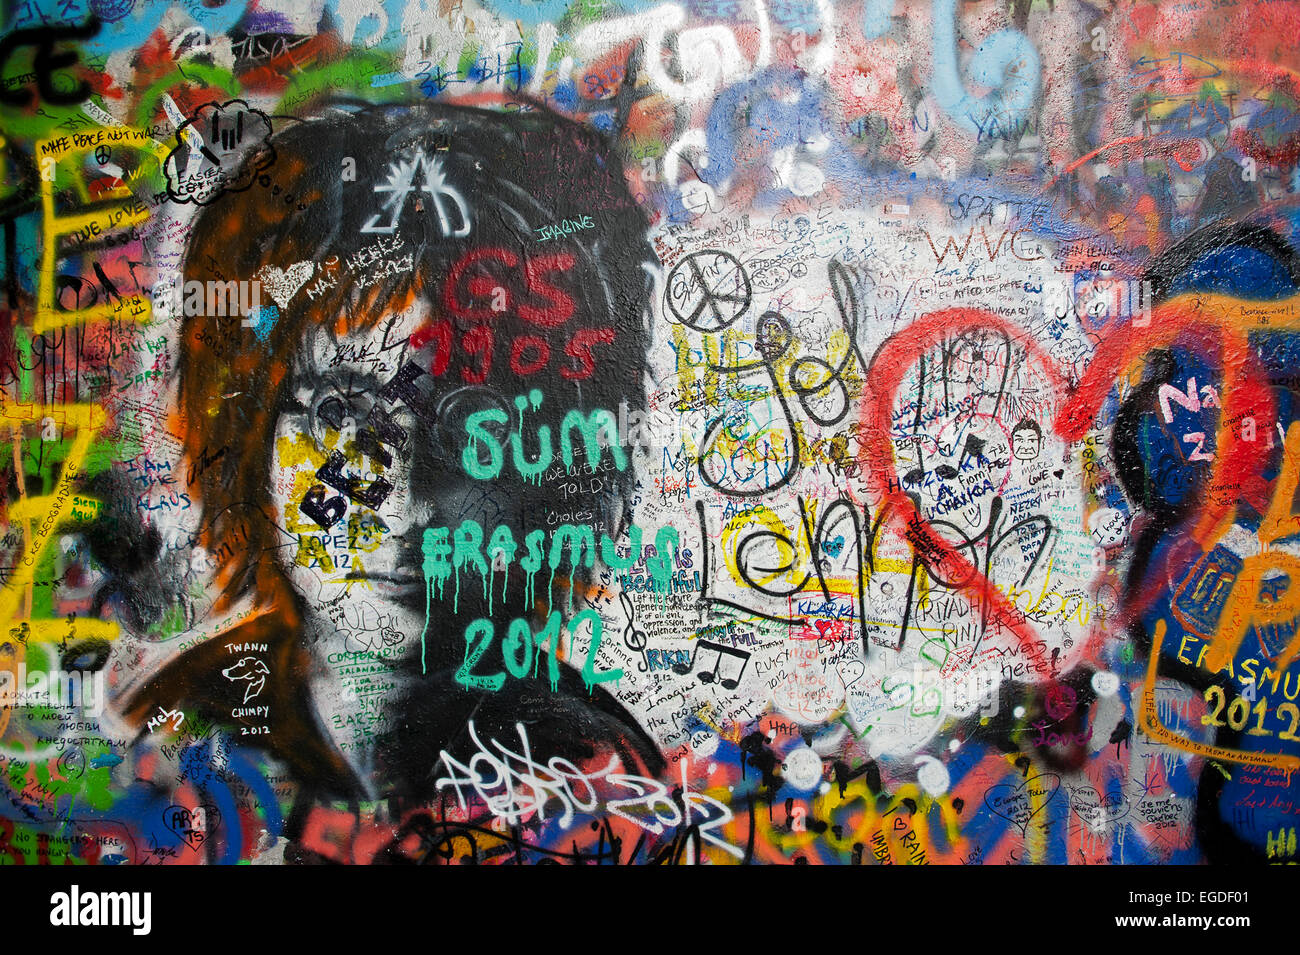 Le Graffiti le long de la Mur de Lennon à Grand Prieuré Square, Prague, République Tchèque, Europe Banque D'Images